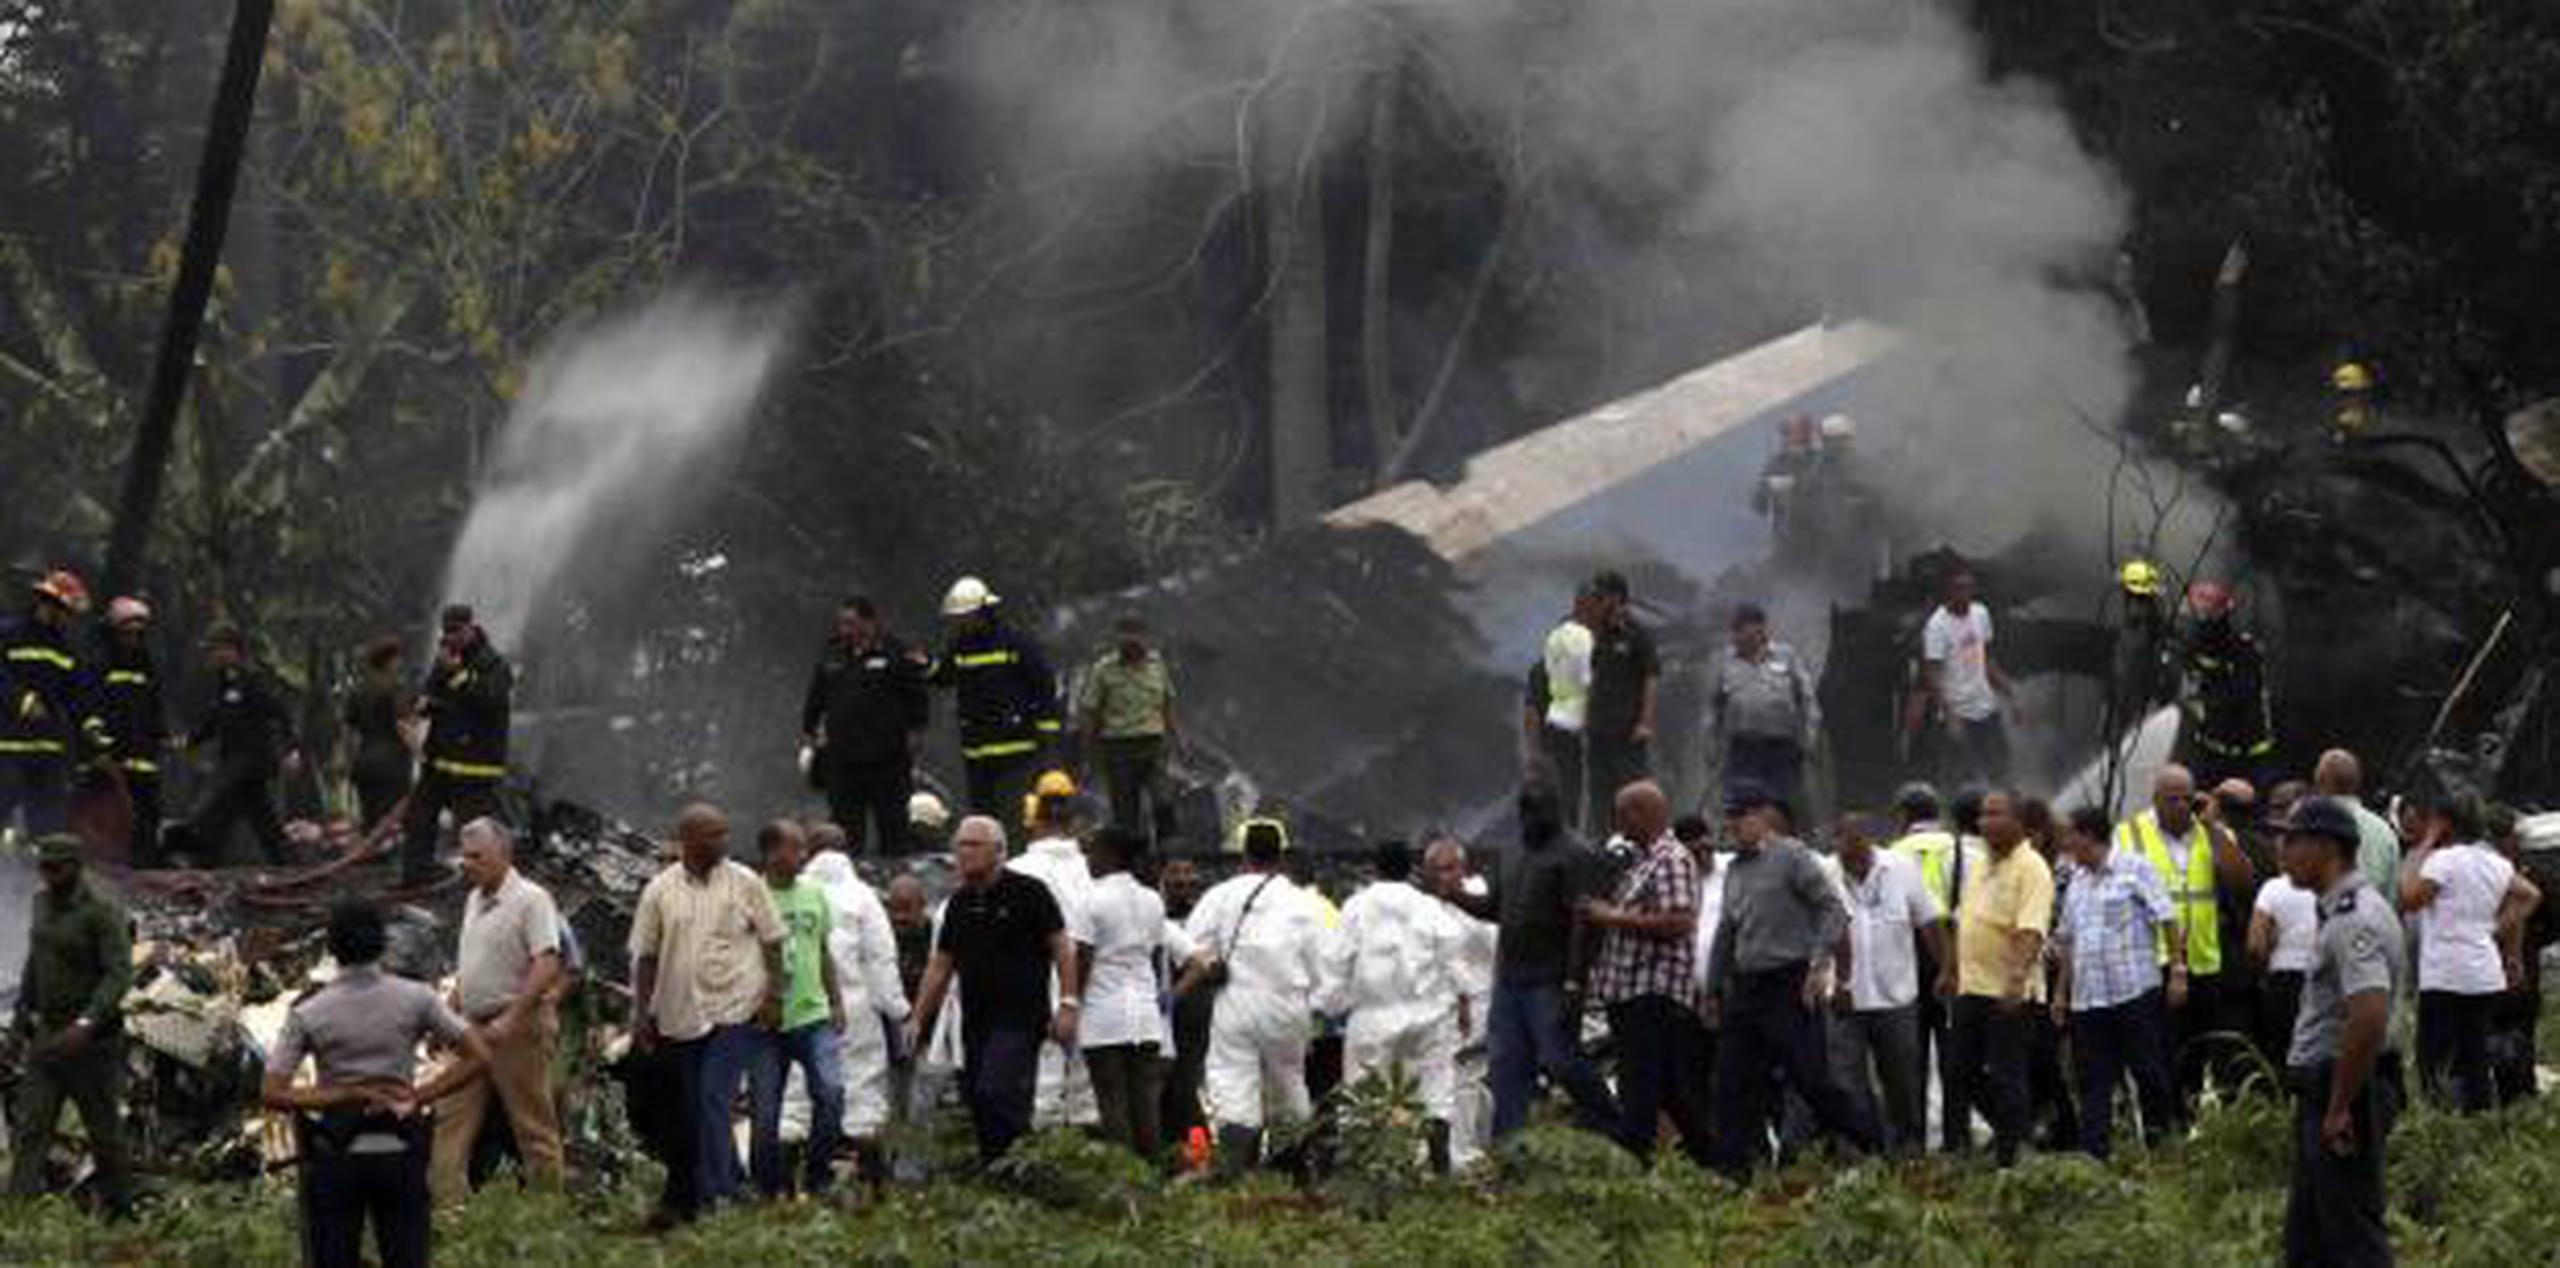 El Boeing 737/200 se accidentó con 113 personas a bordo. (AP / Enrique de la Osa)